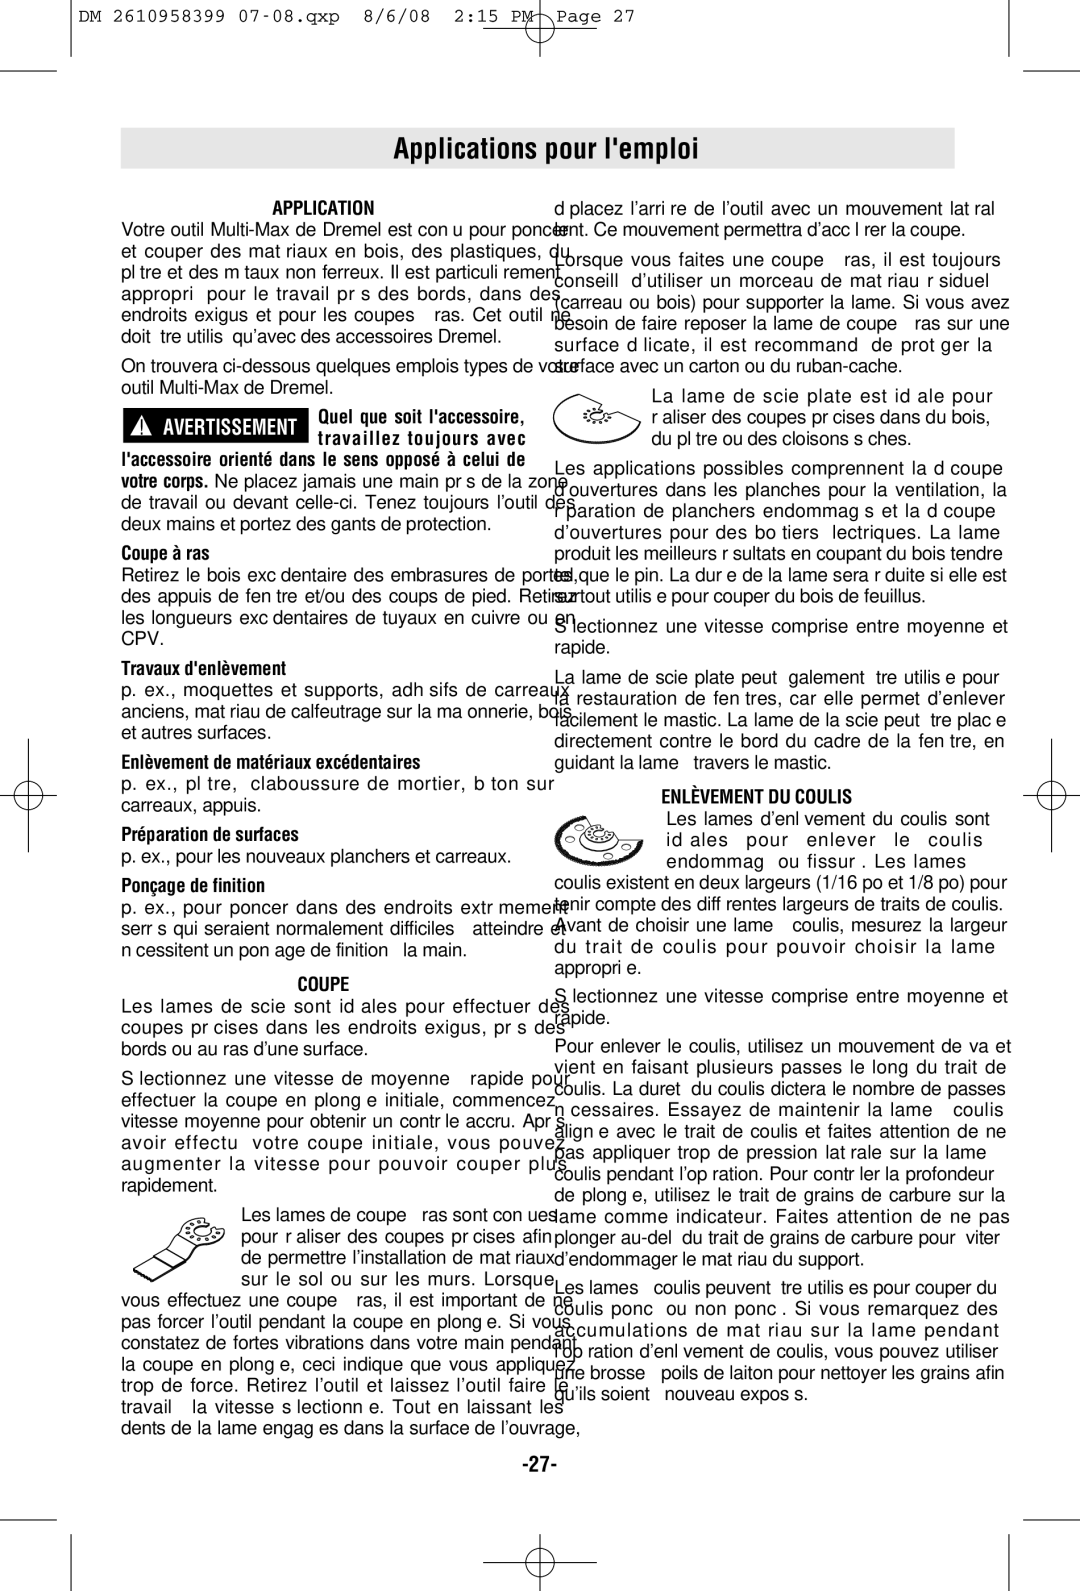 Dremel 6300 manual Applications pour lemploi, Coupe, Enlèvement DU Coulis 